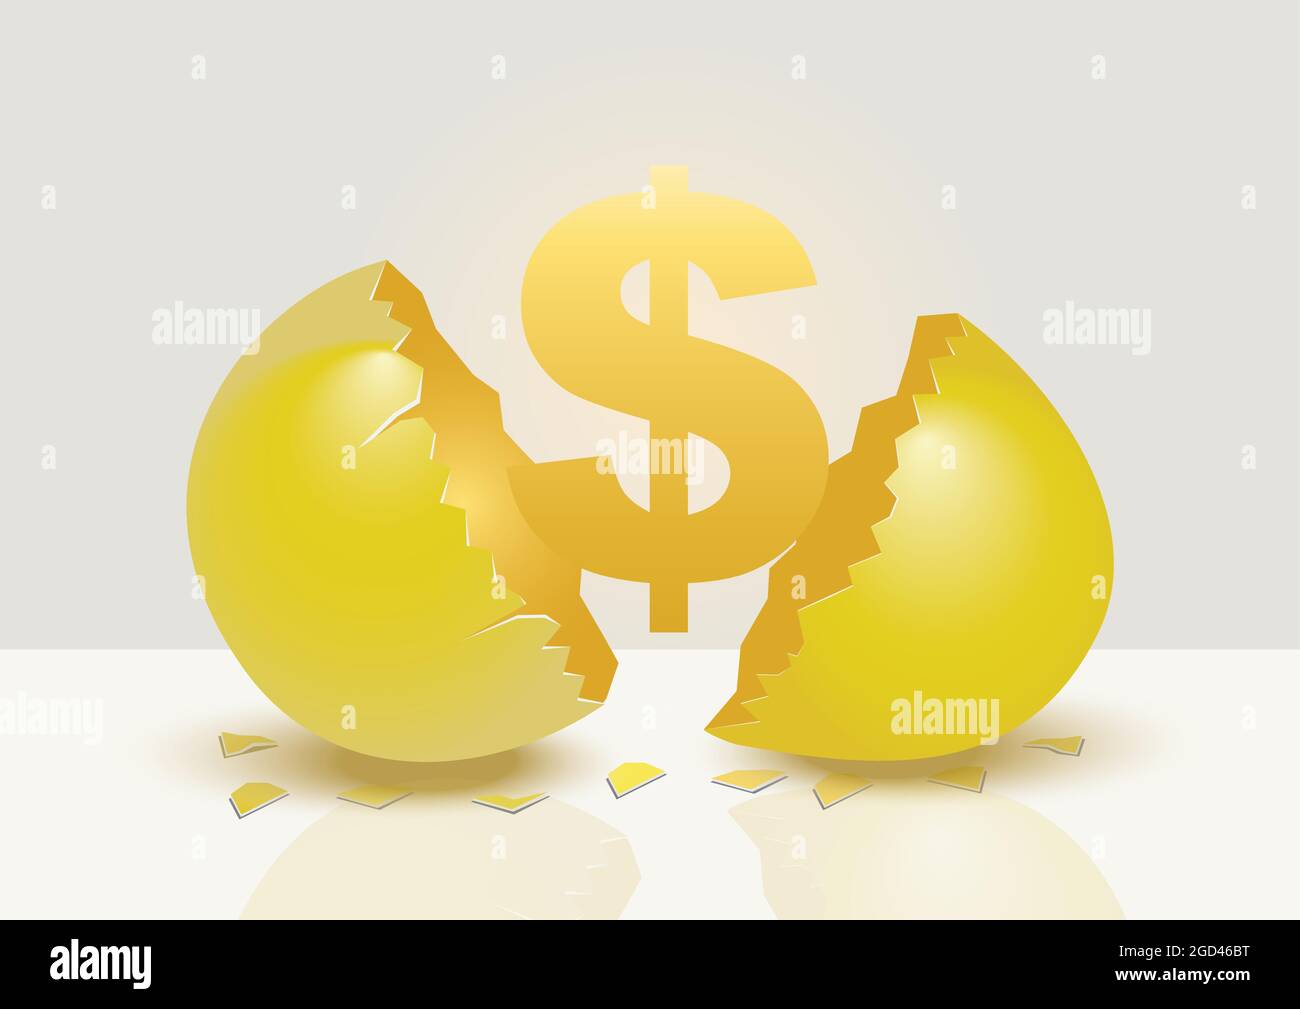 Il segno del denaro d'oro che emerge da un uovo d'oro aperto spaccato. Illustrazione vettoriale creativa per il concetto di metafora d'uovo dorato isolato su sfondo grigio Illustrazione Vettoriale